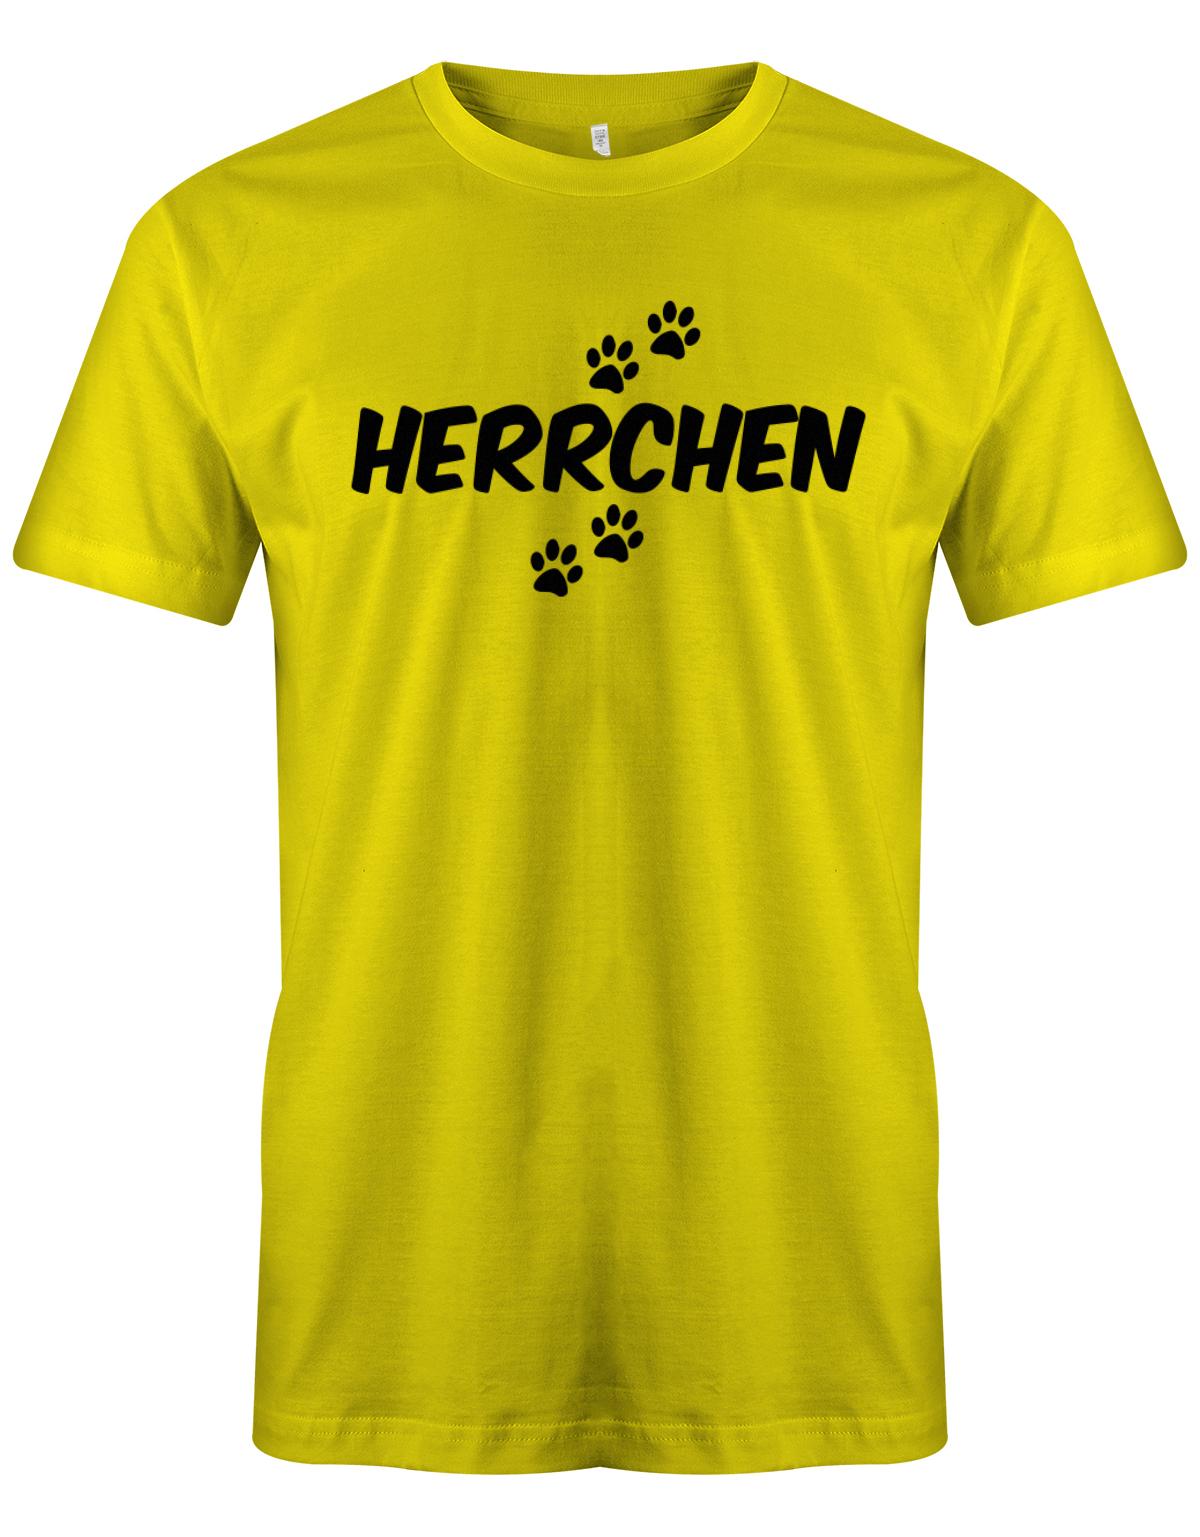 Herrchen-hundebesitzer-Herren-Shirt-Gelb